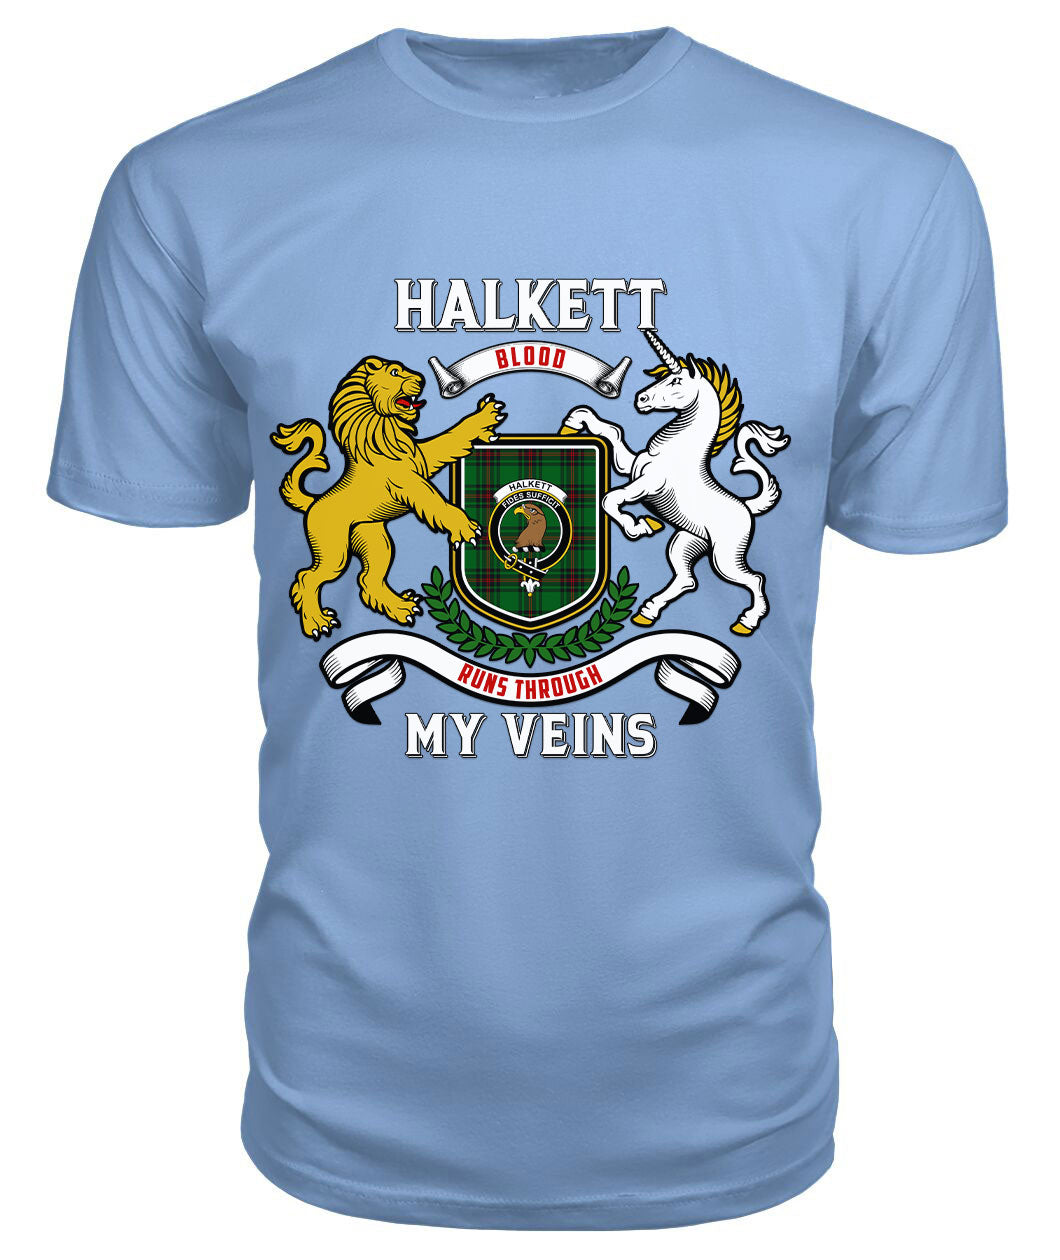 Halkett Tartan Crest 2D T-shirt - Blood Runs Through My Veins Style